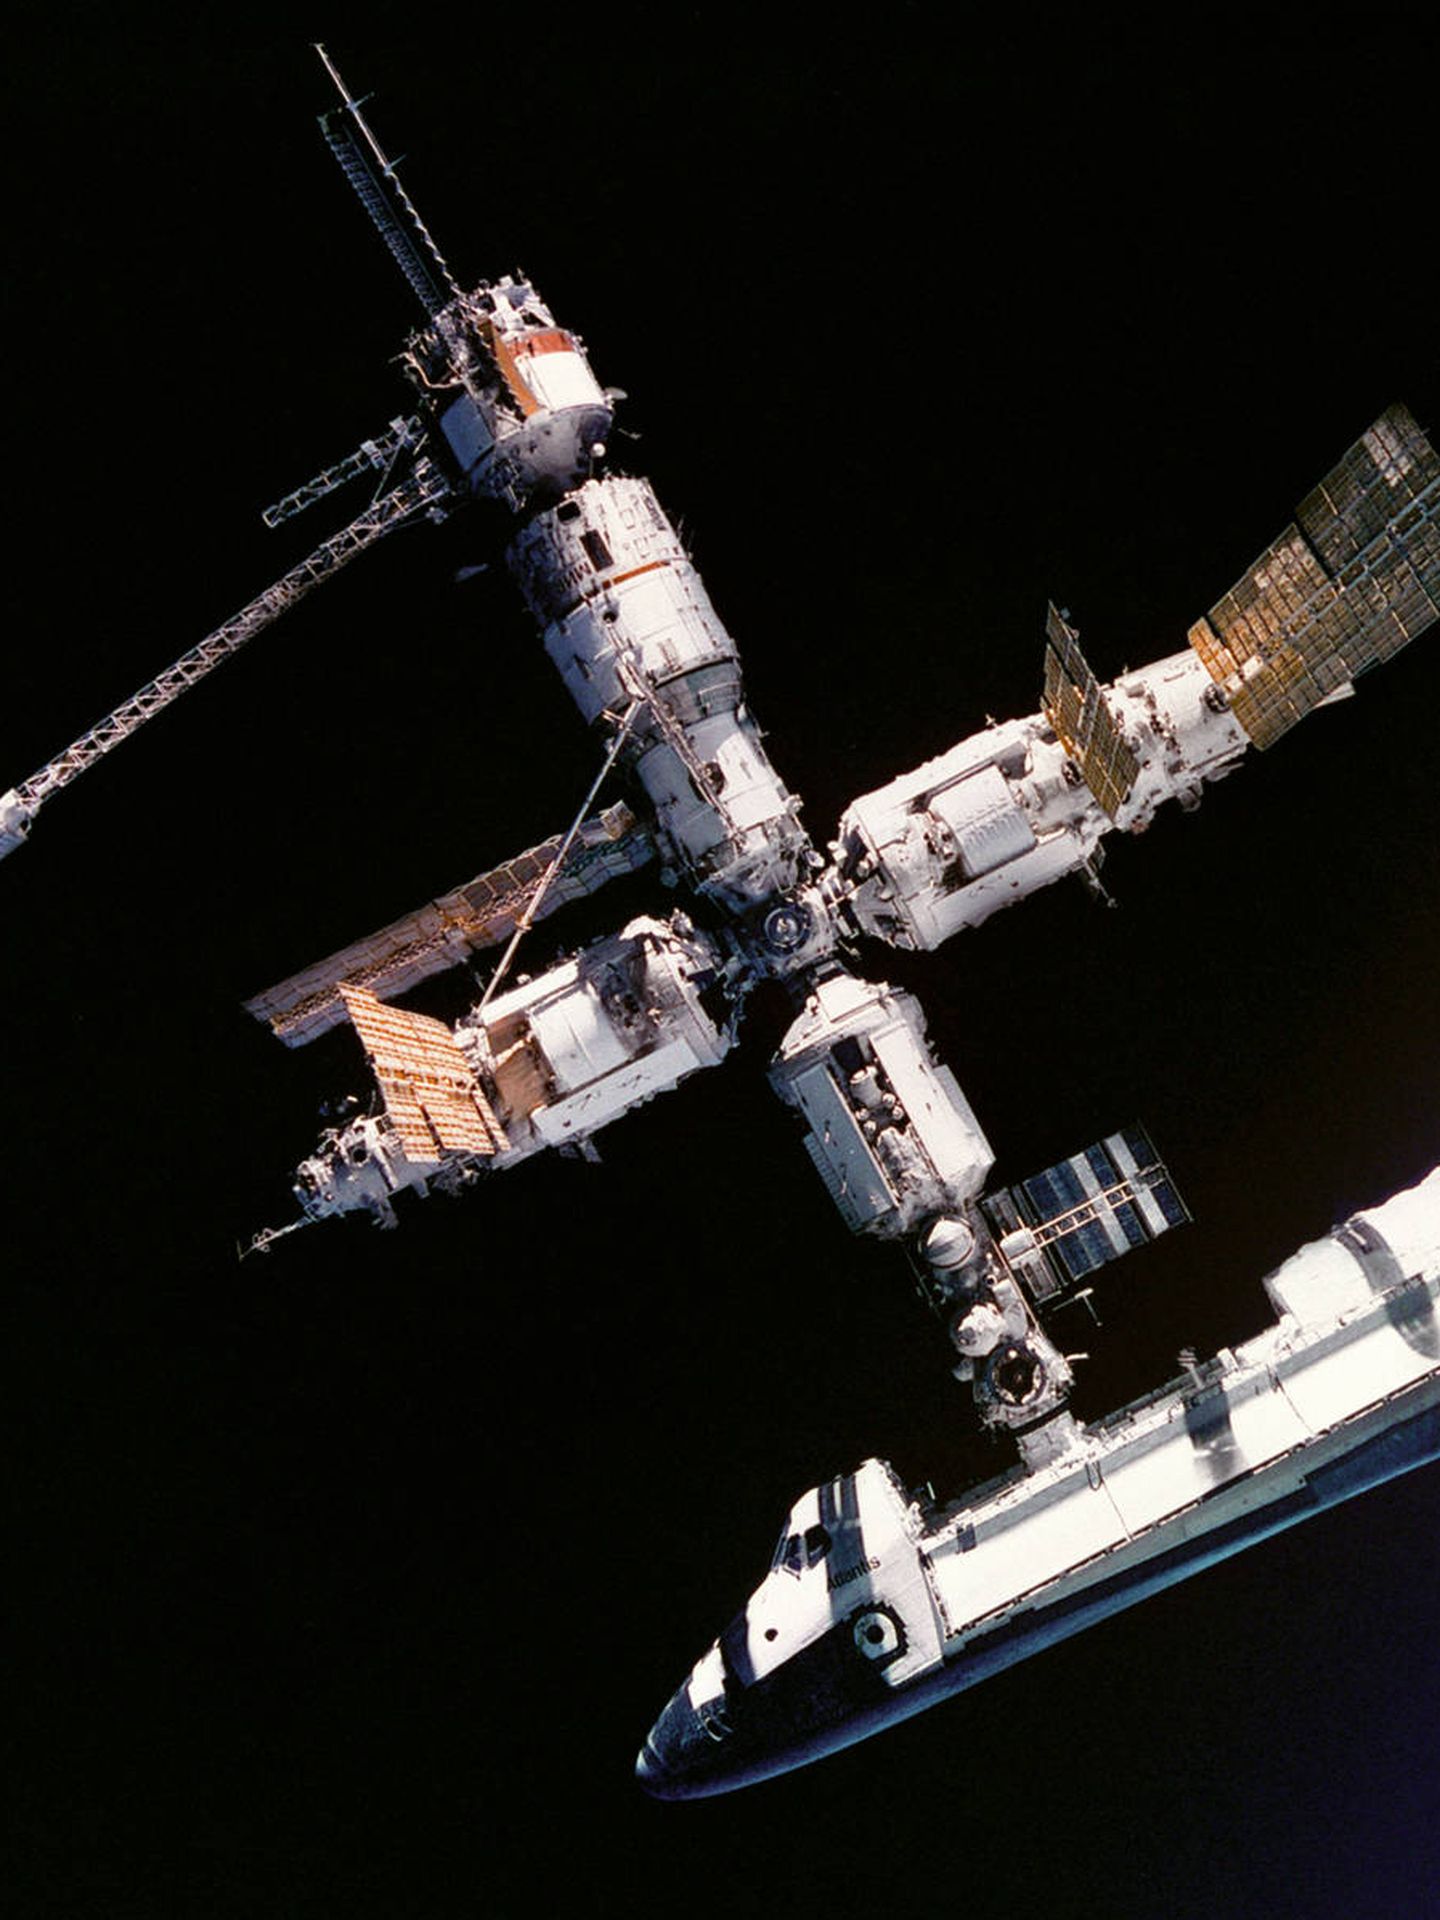 La MIR, conectada aquí al transbordador Atlantis, fue la última estación espacial rusa. (NASA)